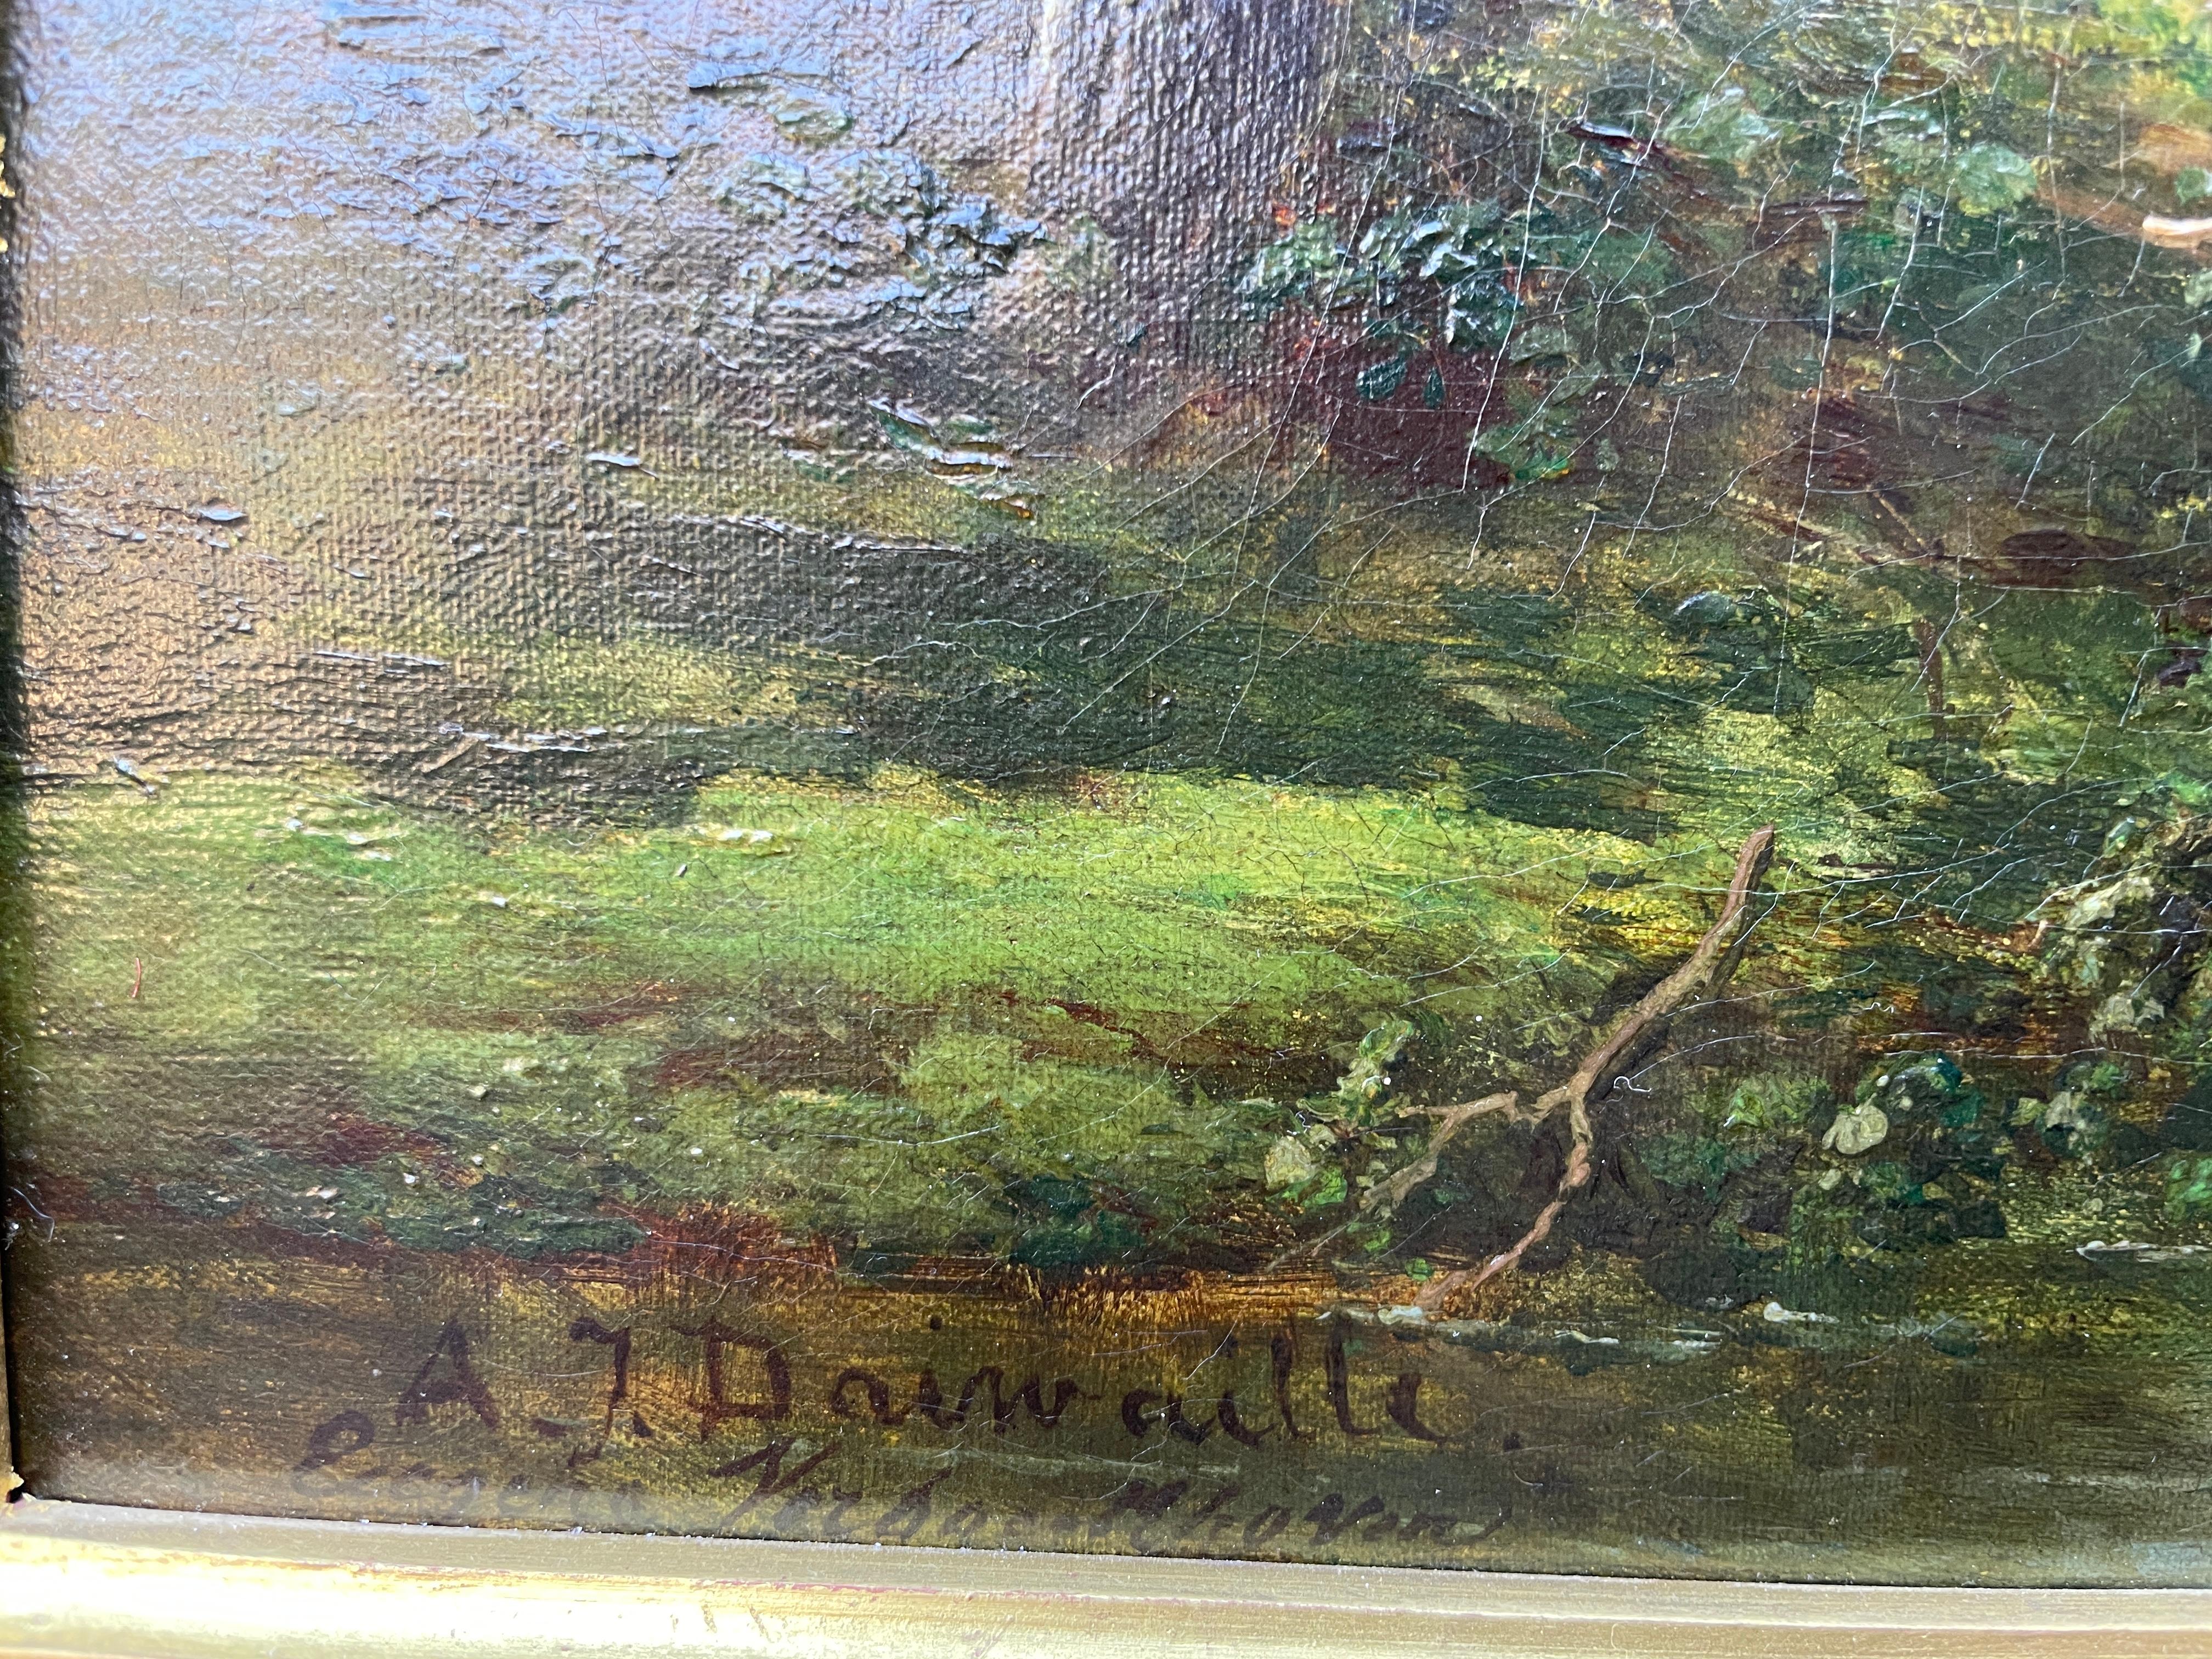 Öl auf Leinwand von Eugene Verboeckhoven (1796-1881) & Alexander Daiwaille (1818-1888) Landschaft mit Rindern und Schafen auf einem Feldweg.

Von beiden Künstlern signiert.

Leinwandgröße: 22